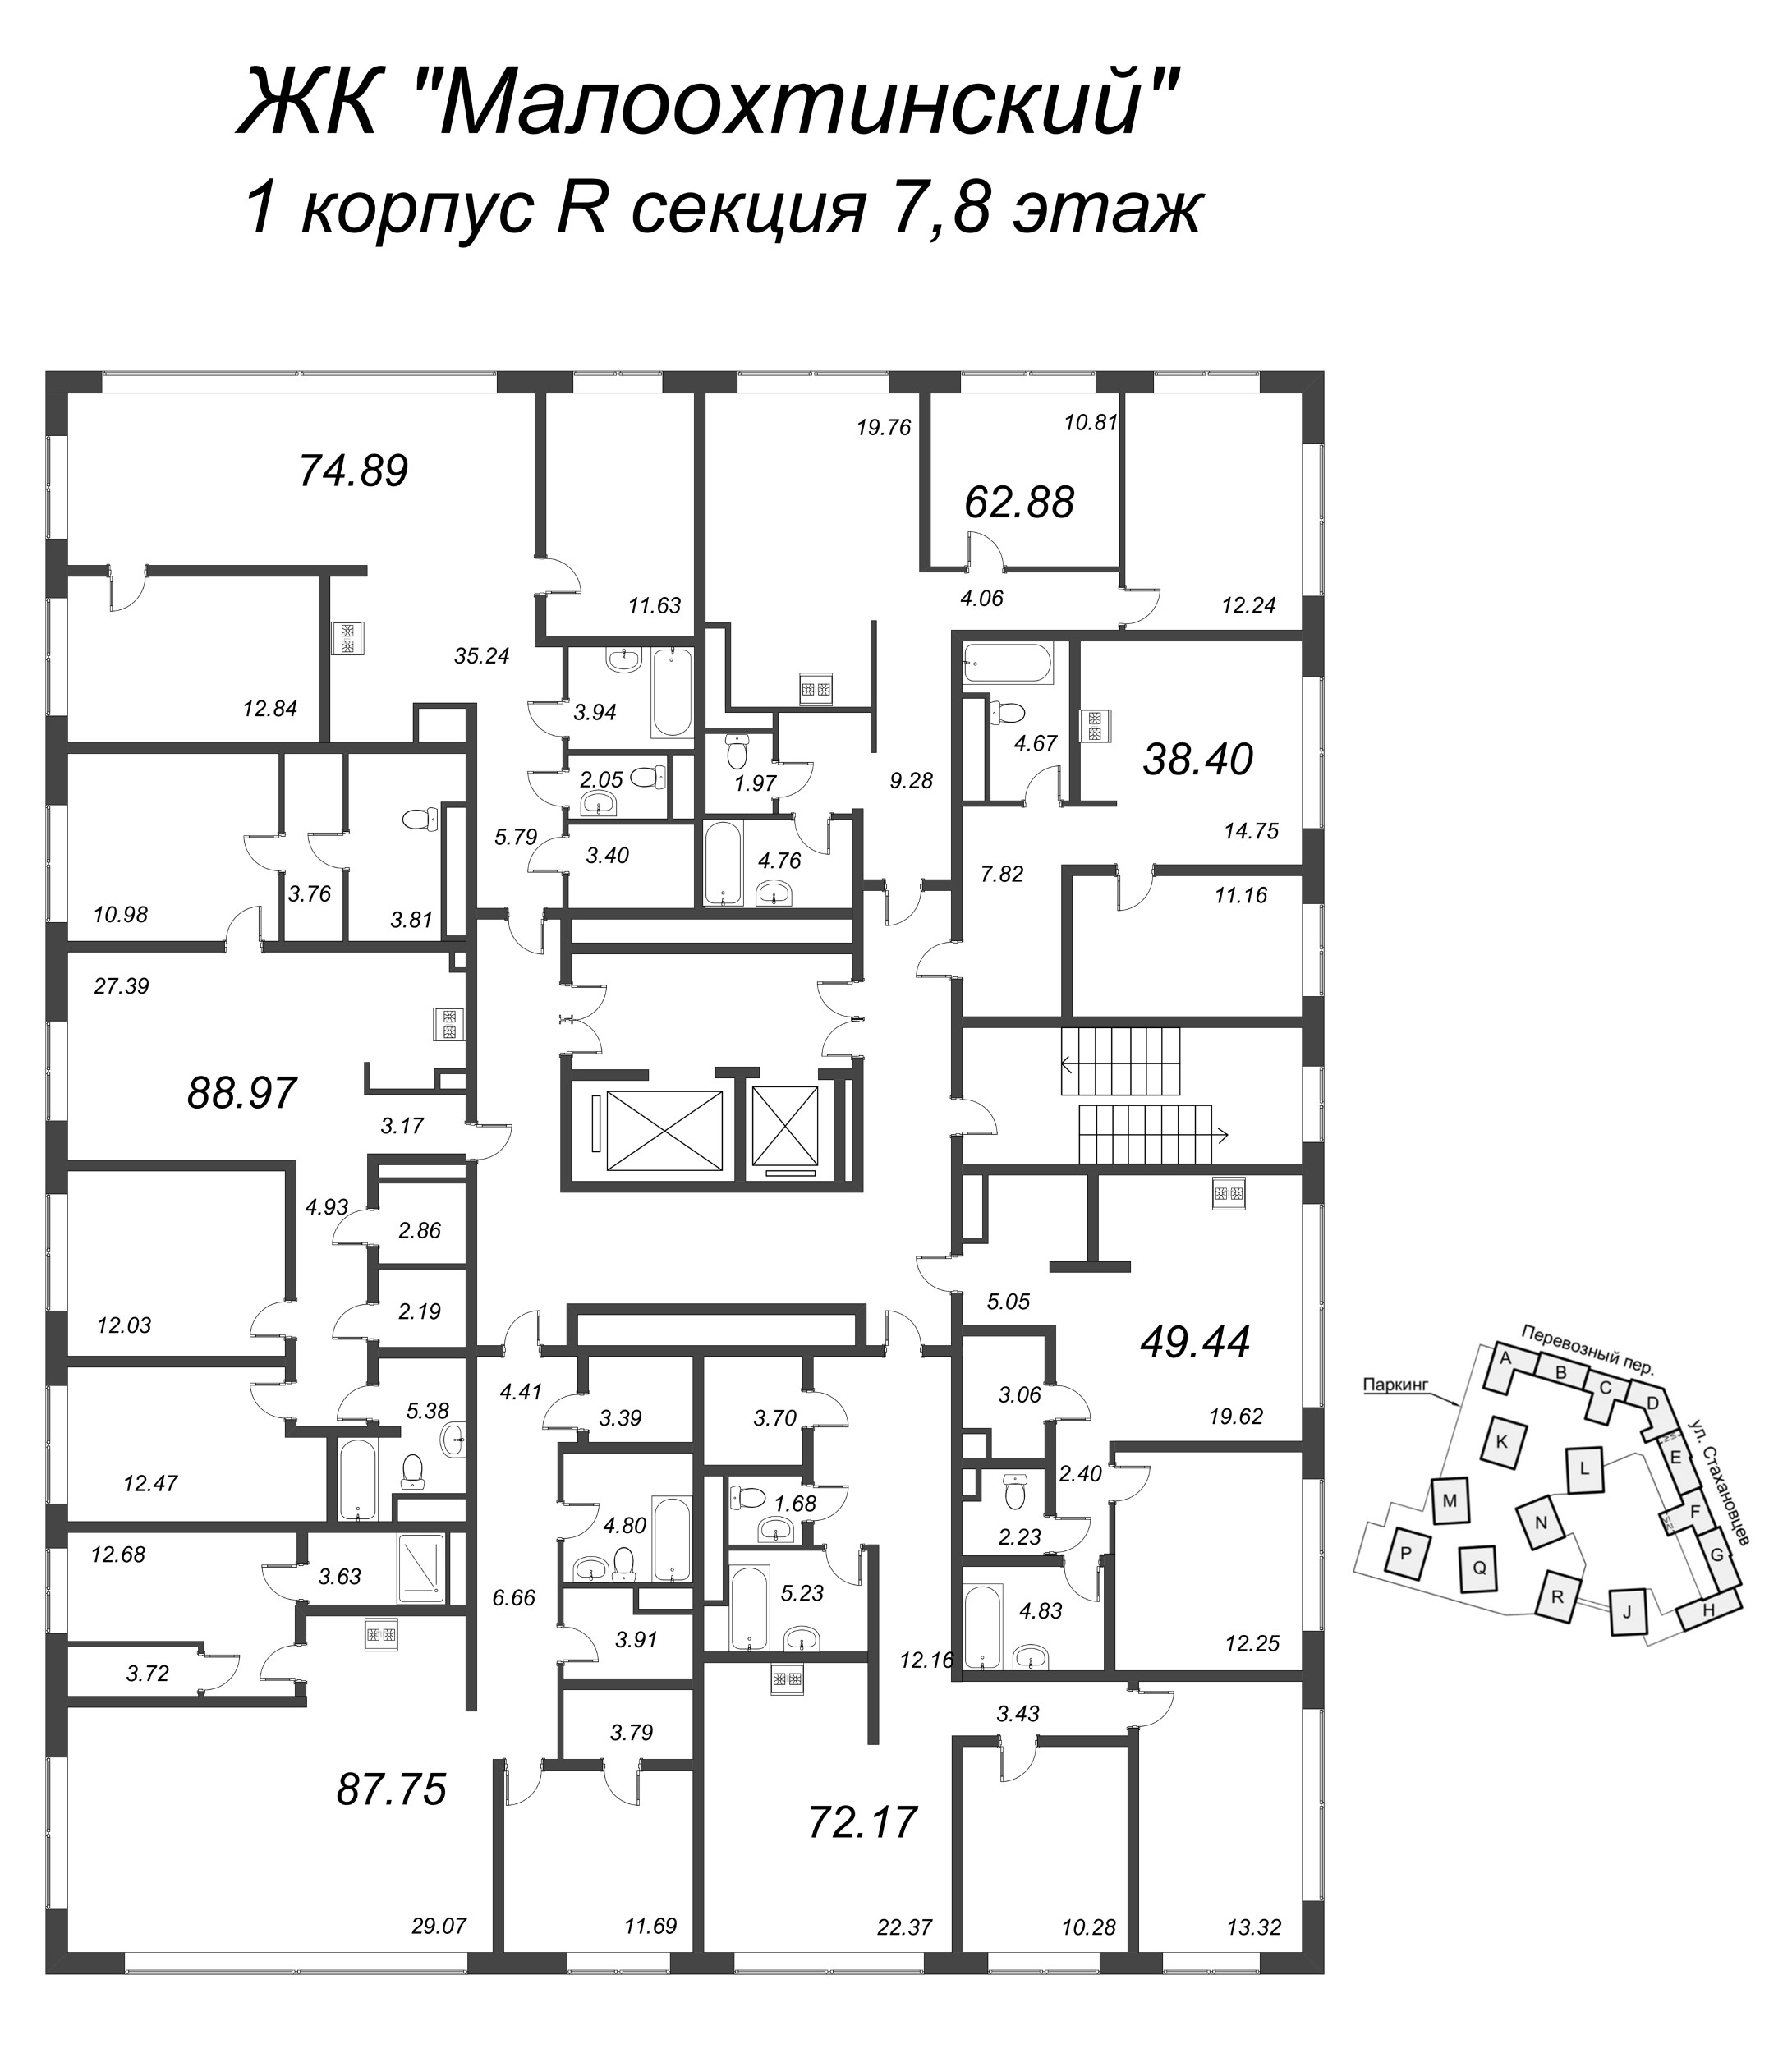 2-комнатная (Евро) квартира, 39.6 м² в ЖК "Малоохтинский, 68" - планировка этажа